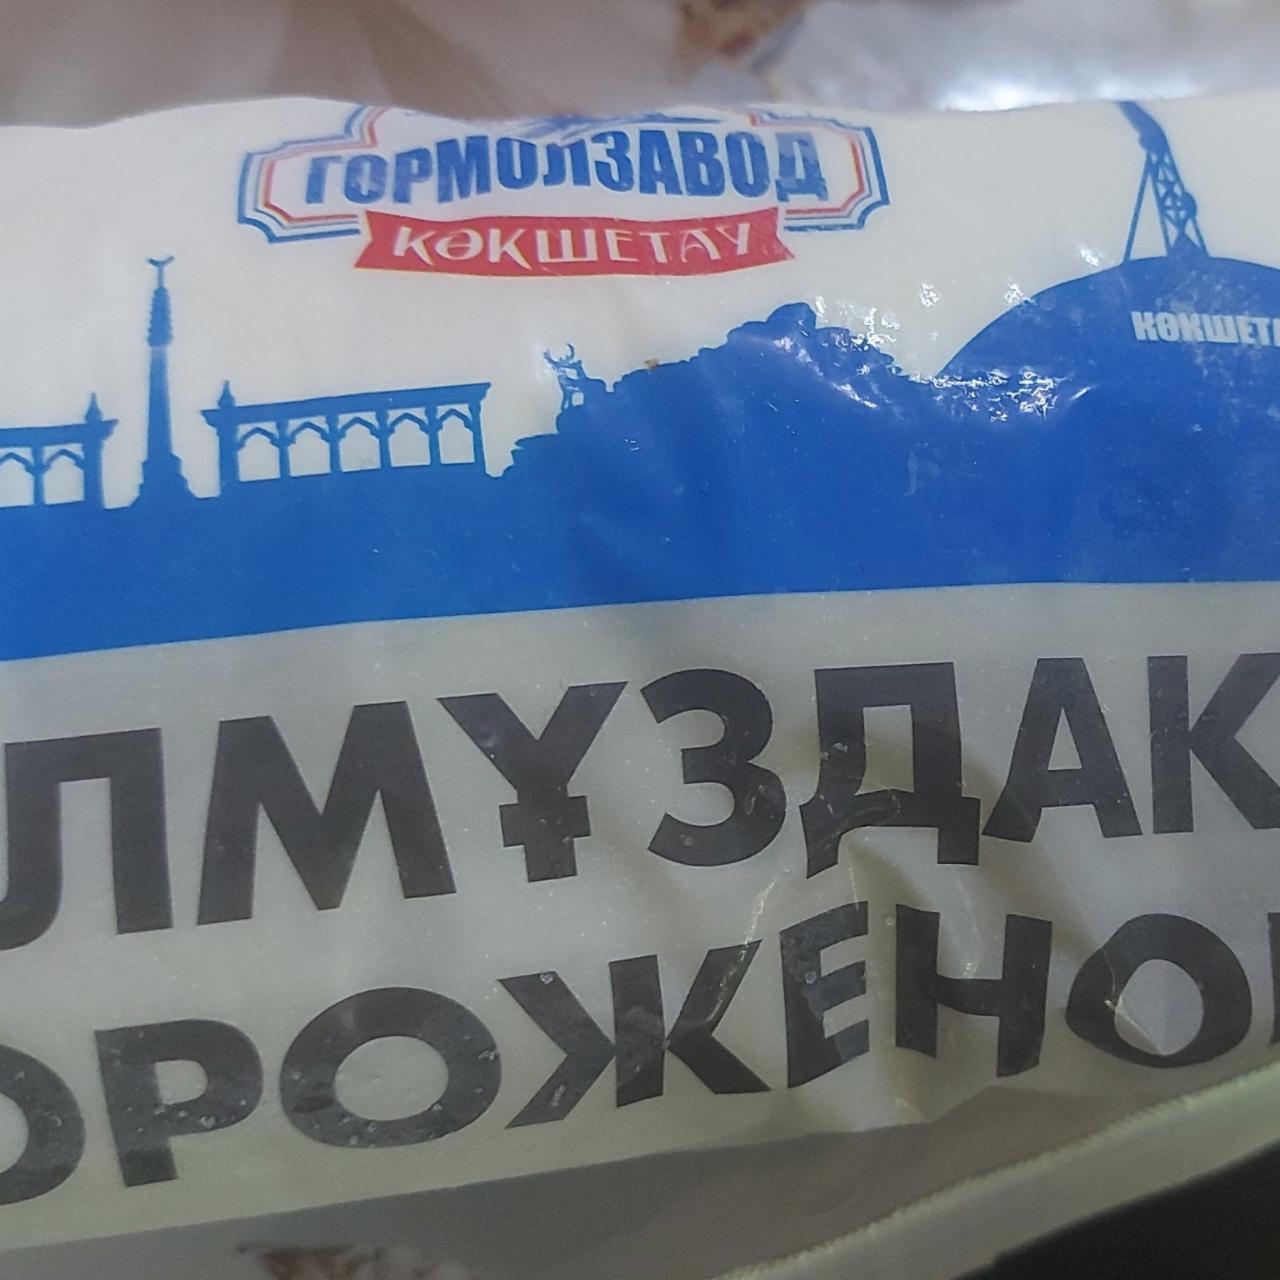 Фото - Мороженое стаканчик Гормолзавод Кокештау